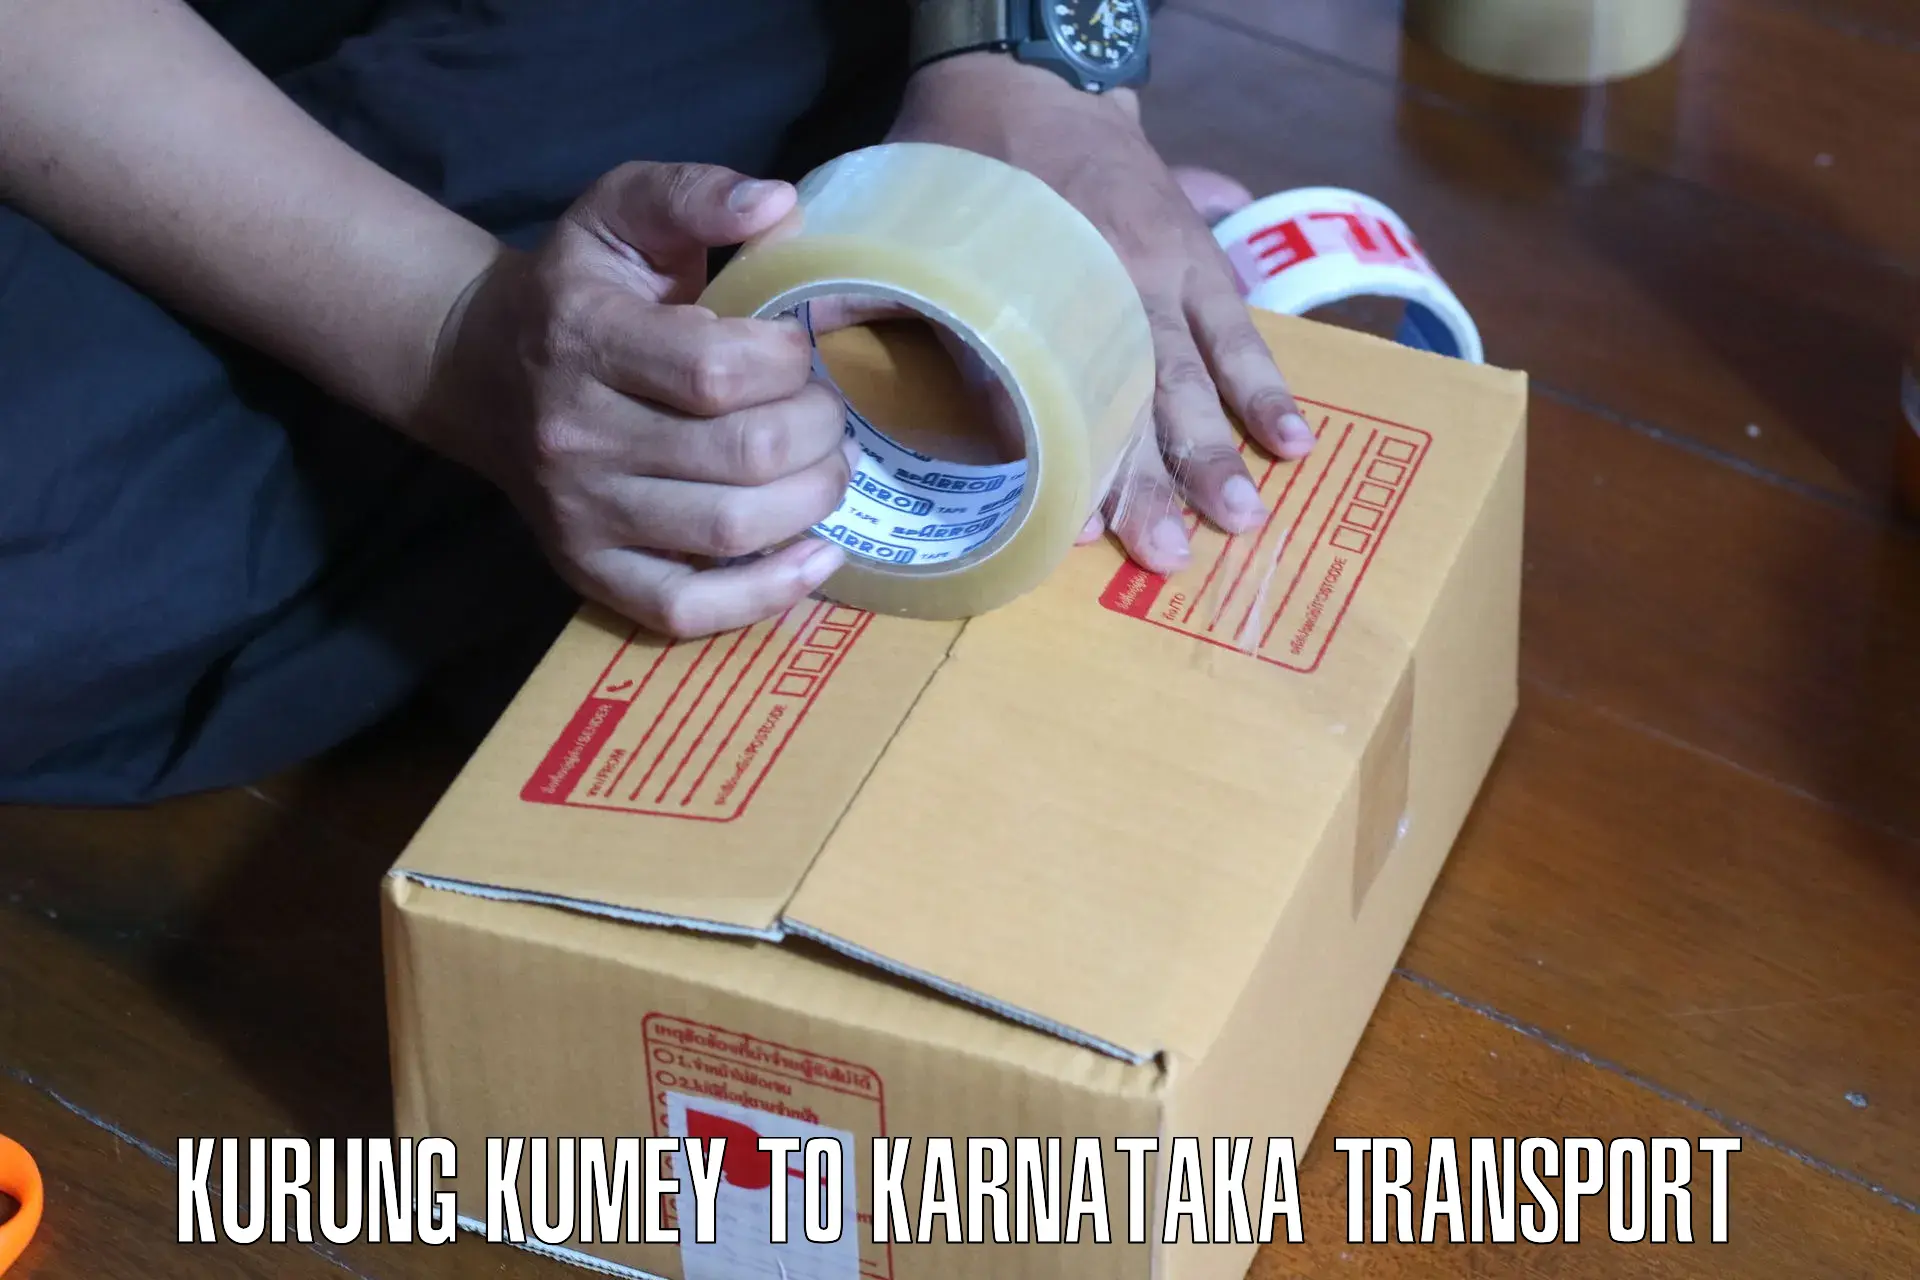 Transport in sharing Kurung Kumey to Huliyar